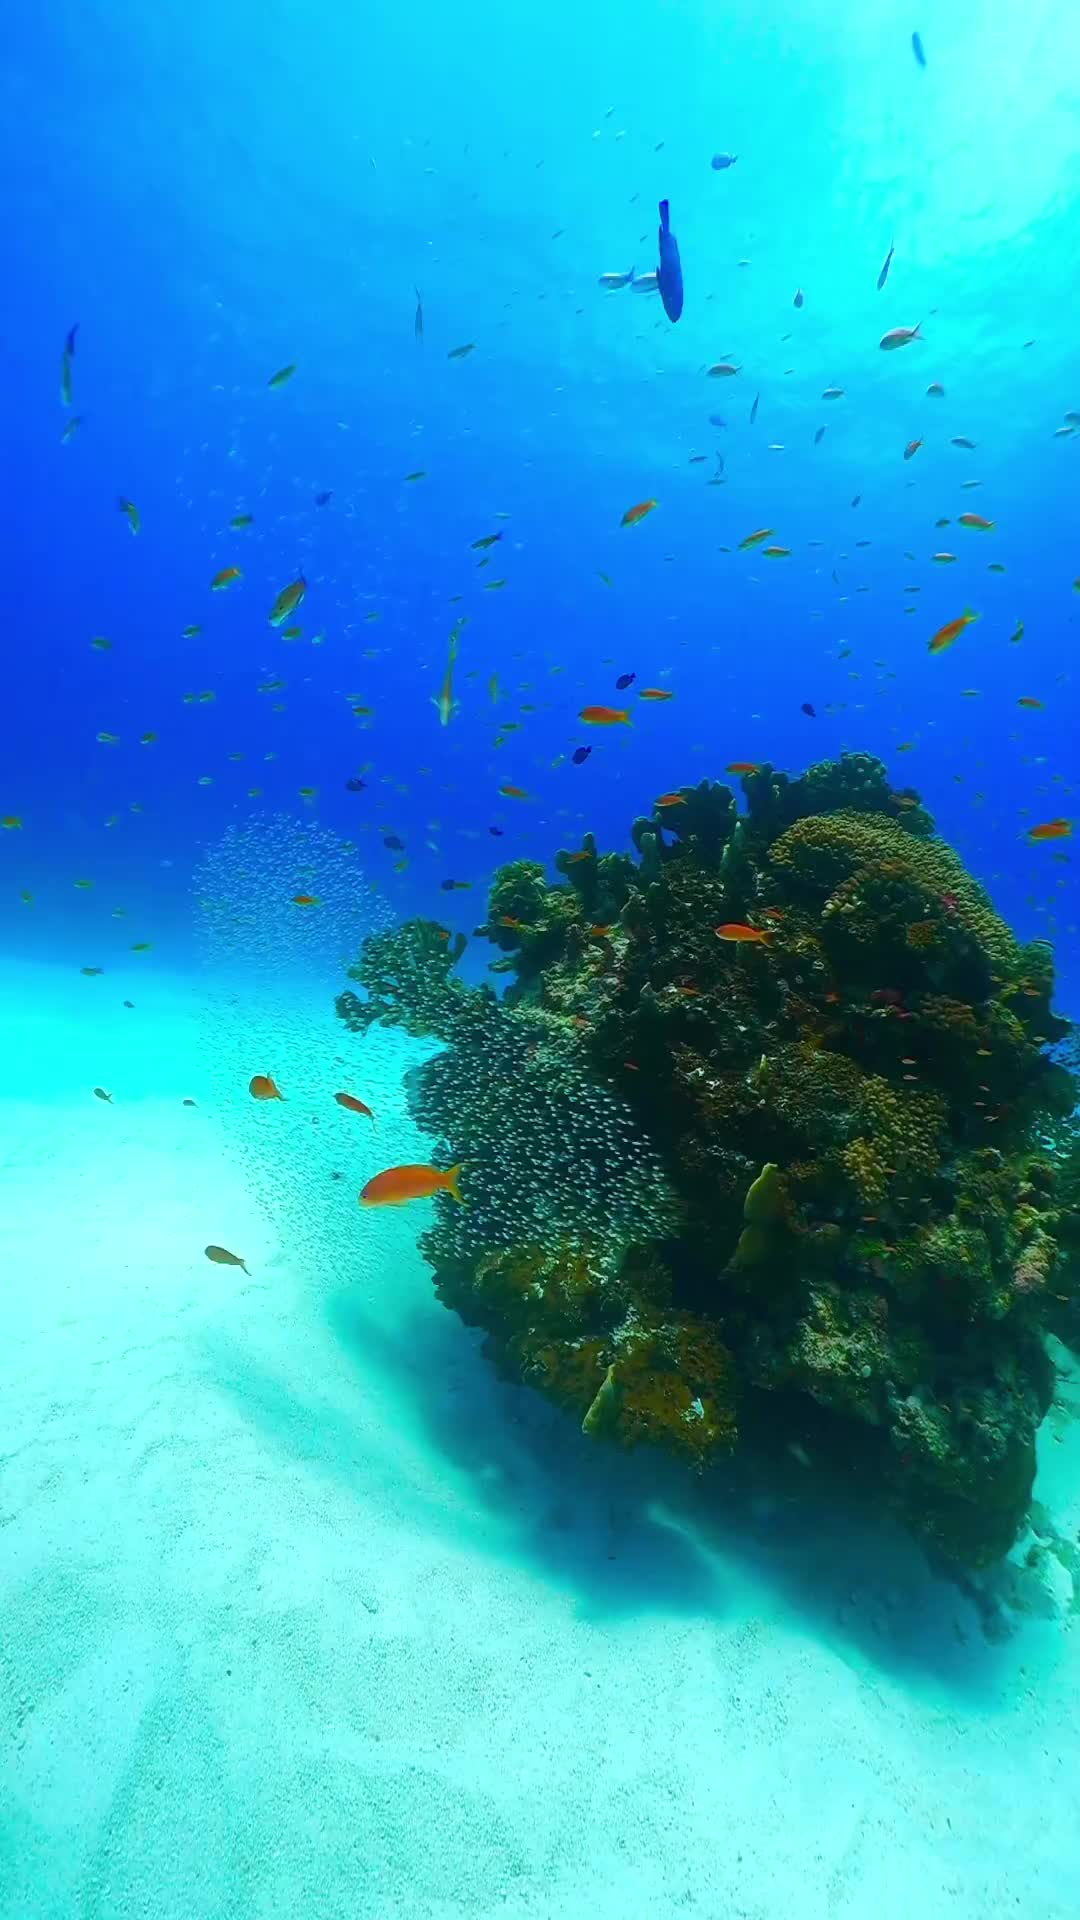 Explore Okinawa's Underwater Wonders This Summer